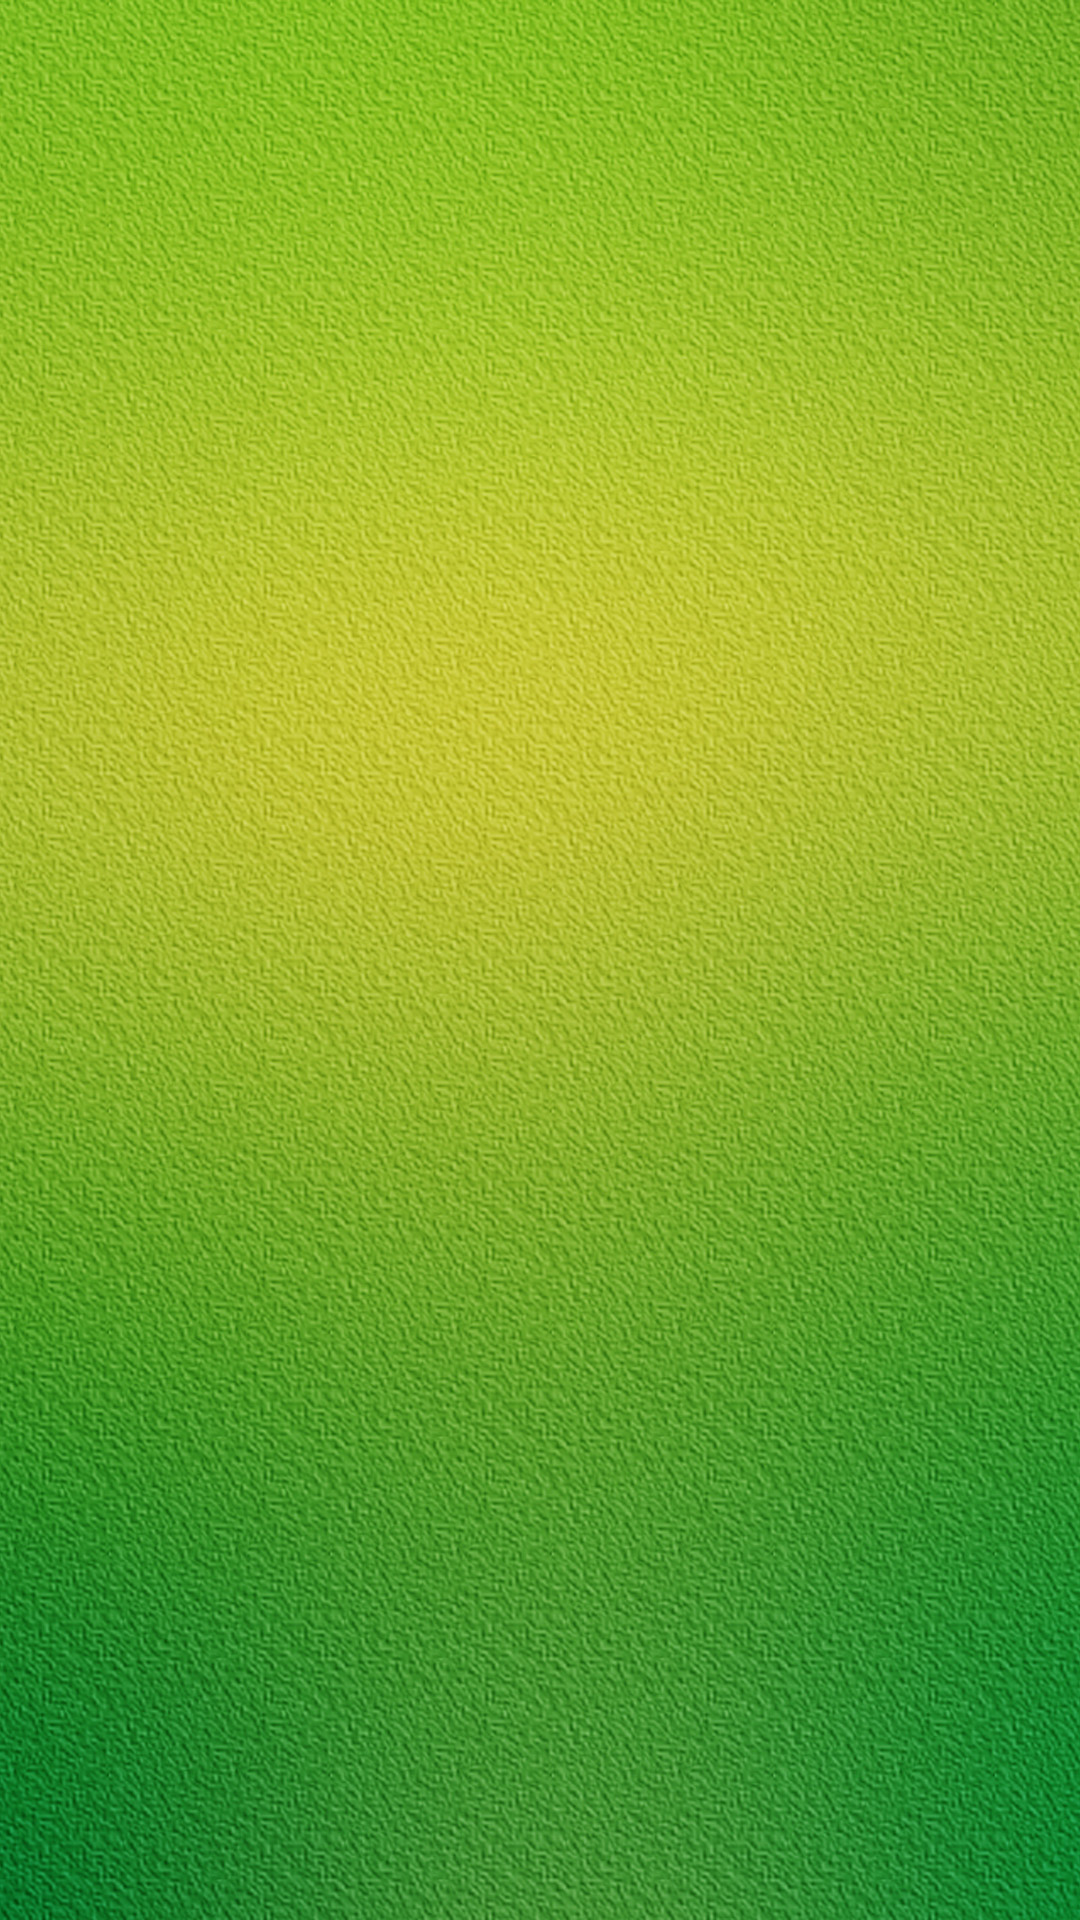 Green Grass Texture Wallpaper For Galaxy S5